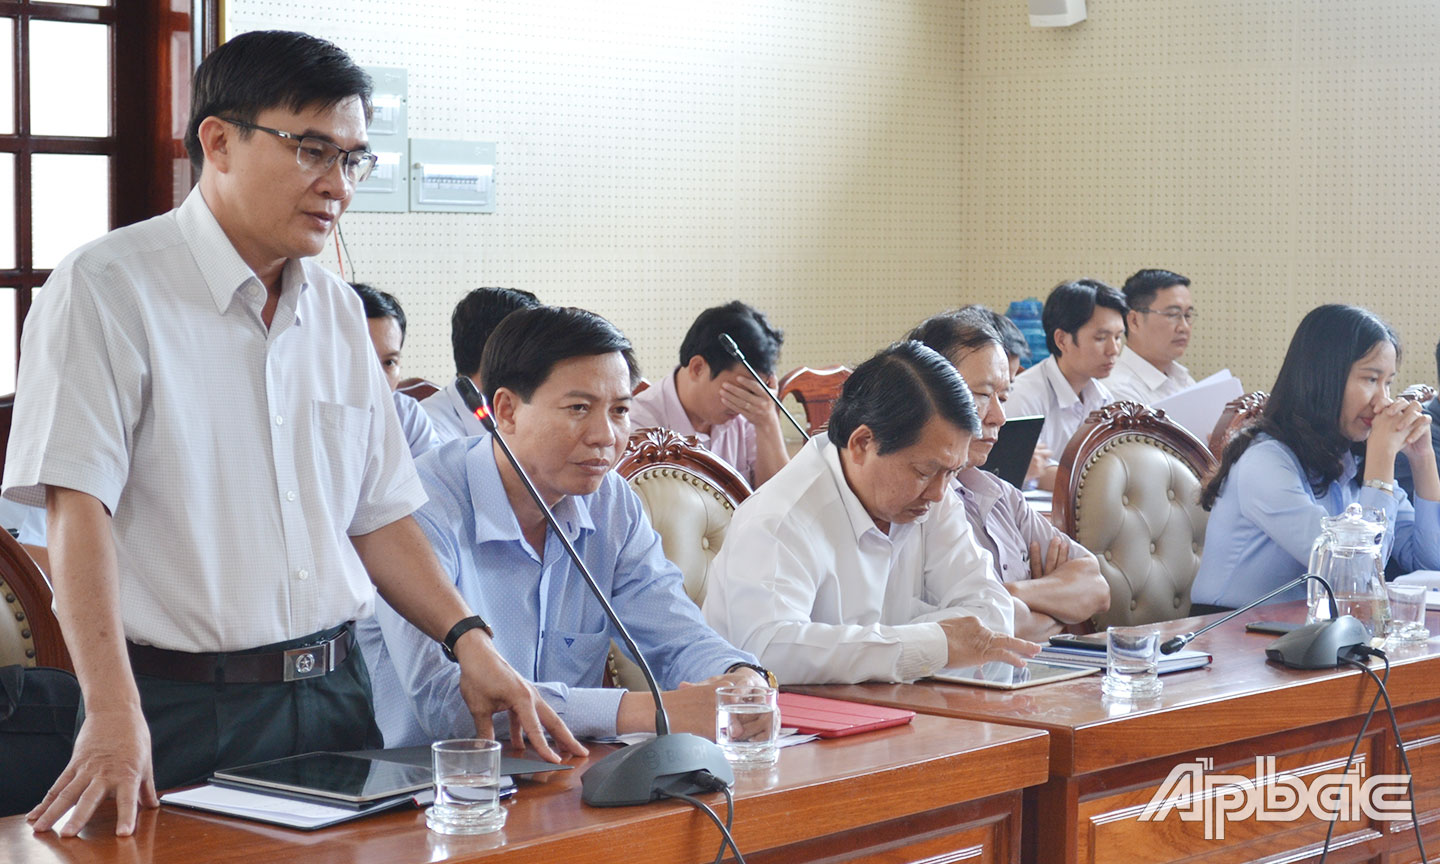 Đồng chí Nguyễn Văn Mười báo cáo kết quả thanh tra của cấp bộ, ngành Trung ương vụ khiếu nại CDC và TTTM Cai Lậy.    